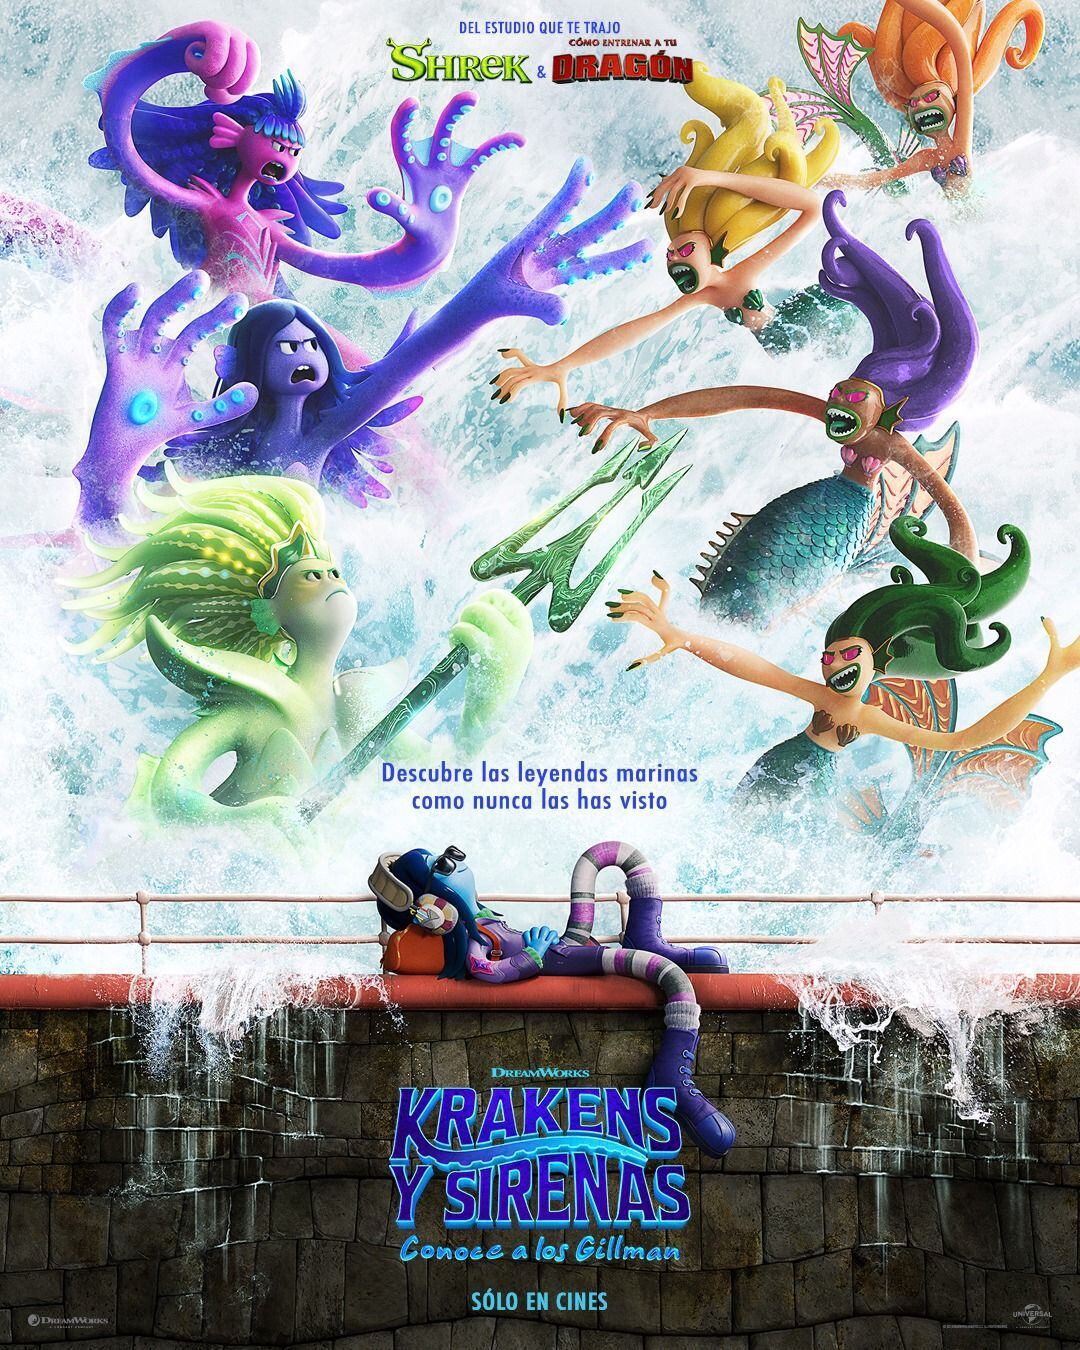 Krakens y sirenas: conoce a los Gillman (Universal Pictures)